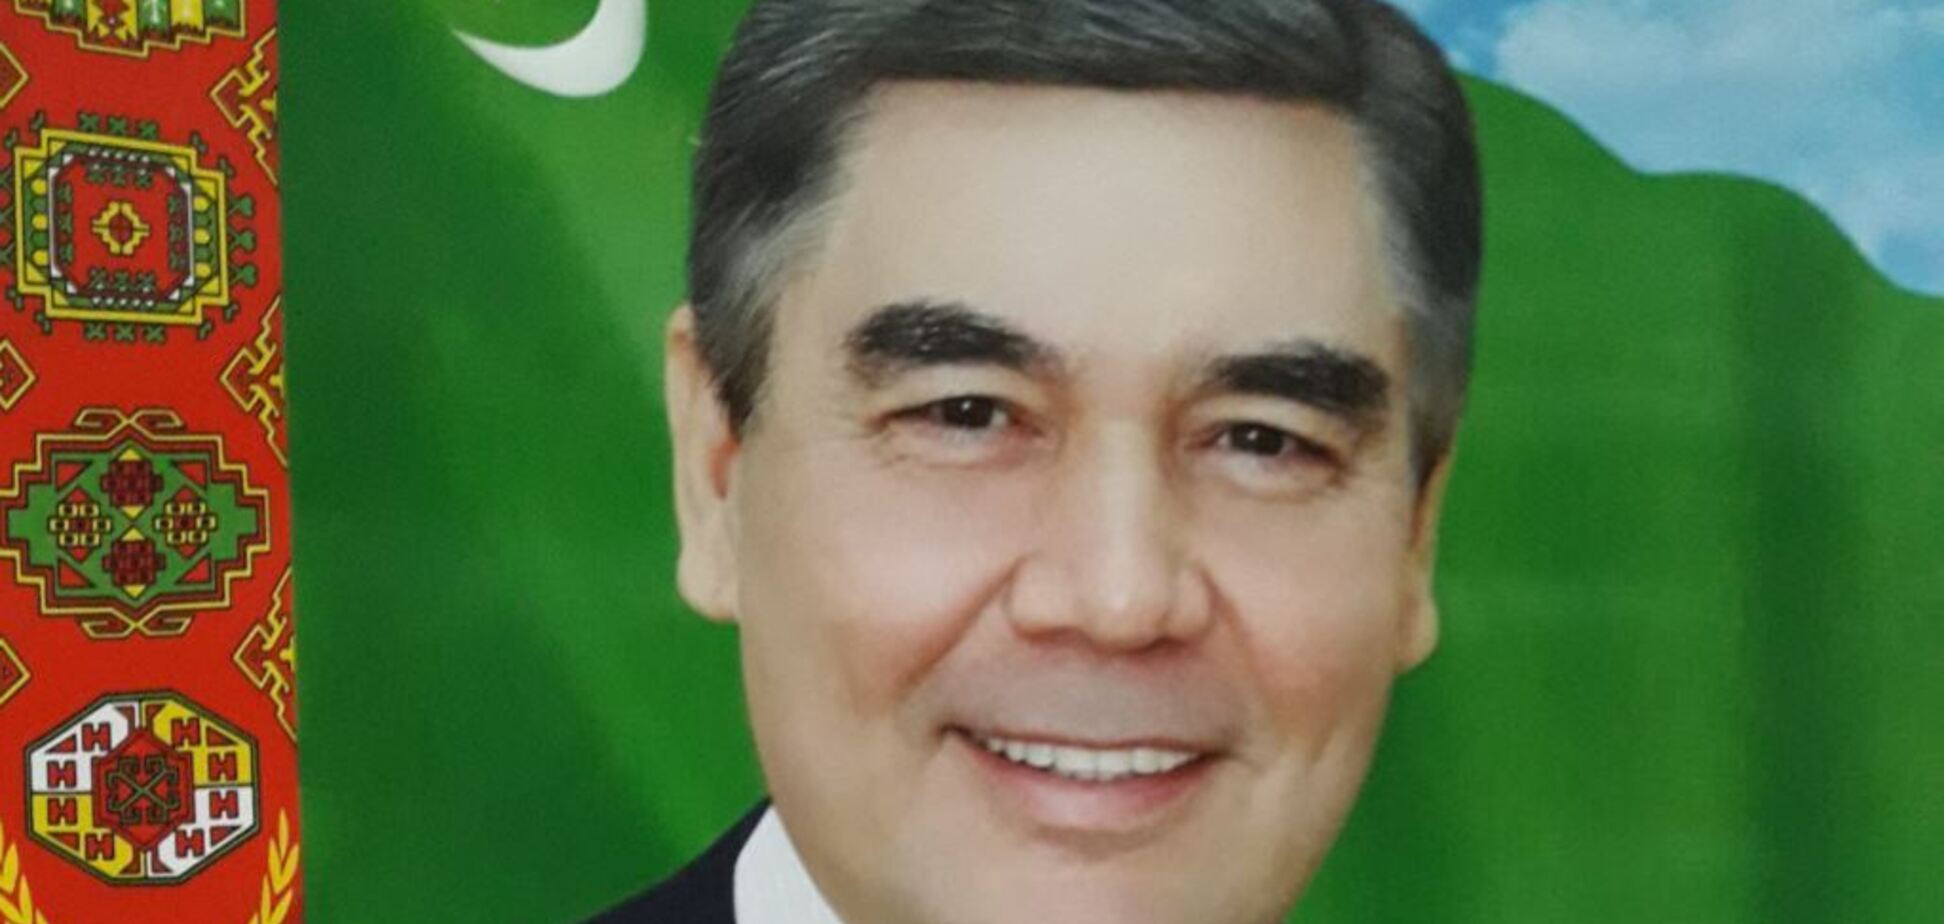 Как президент: туркменских чиновников старше 40 лет обязали стать седыми - СМИ